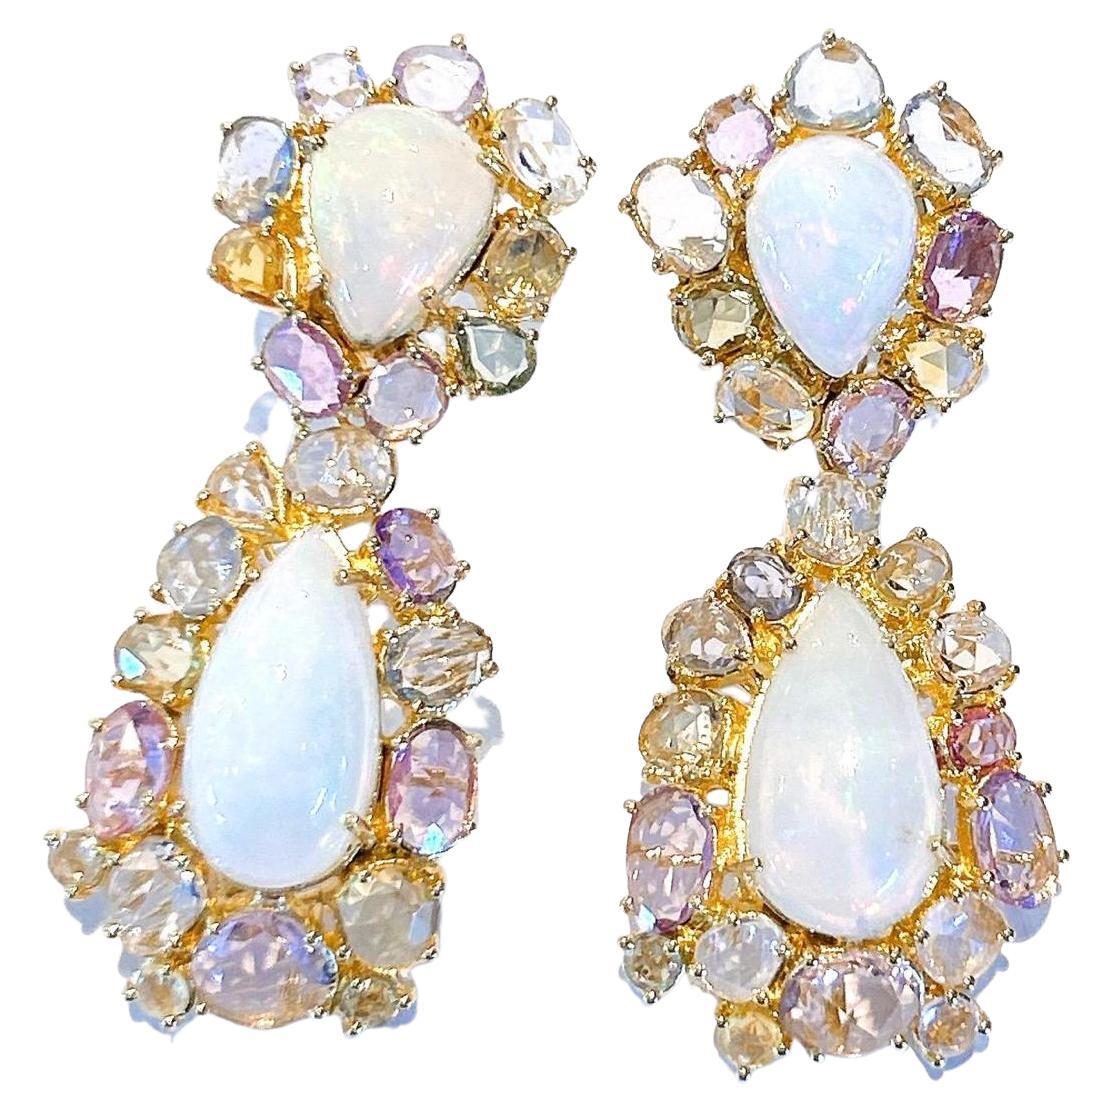 Bochic “Capri” Opal & Rose Cut Fancy Sapphire Earrings Set in 18k Gold & Silver